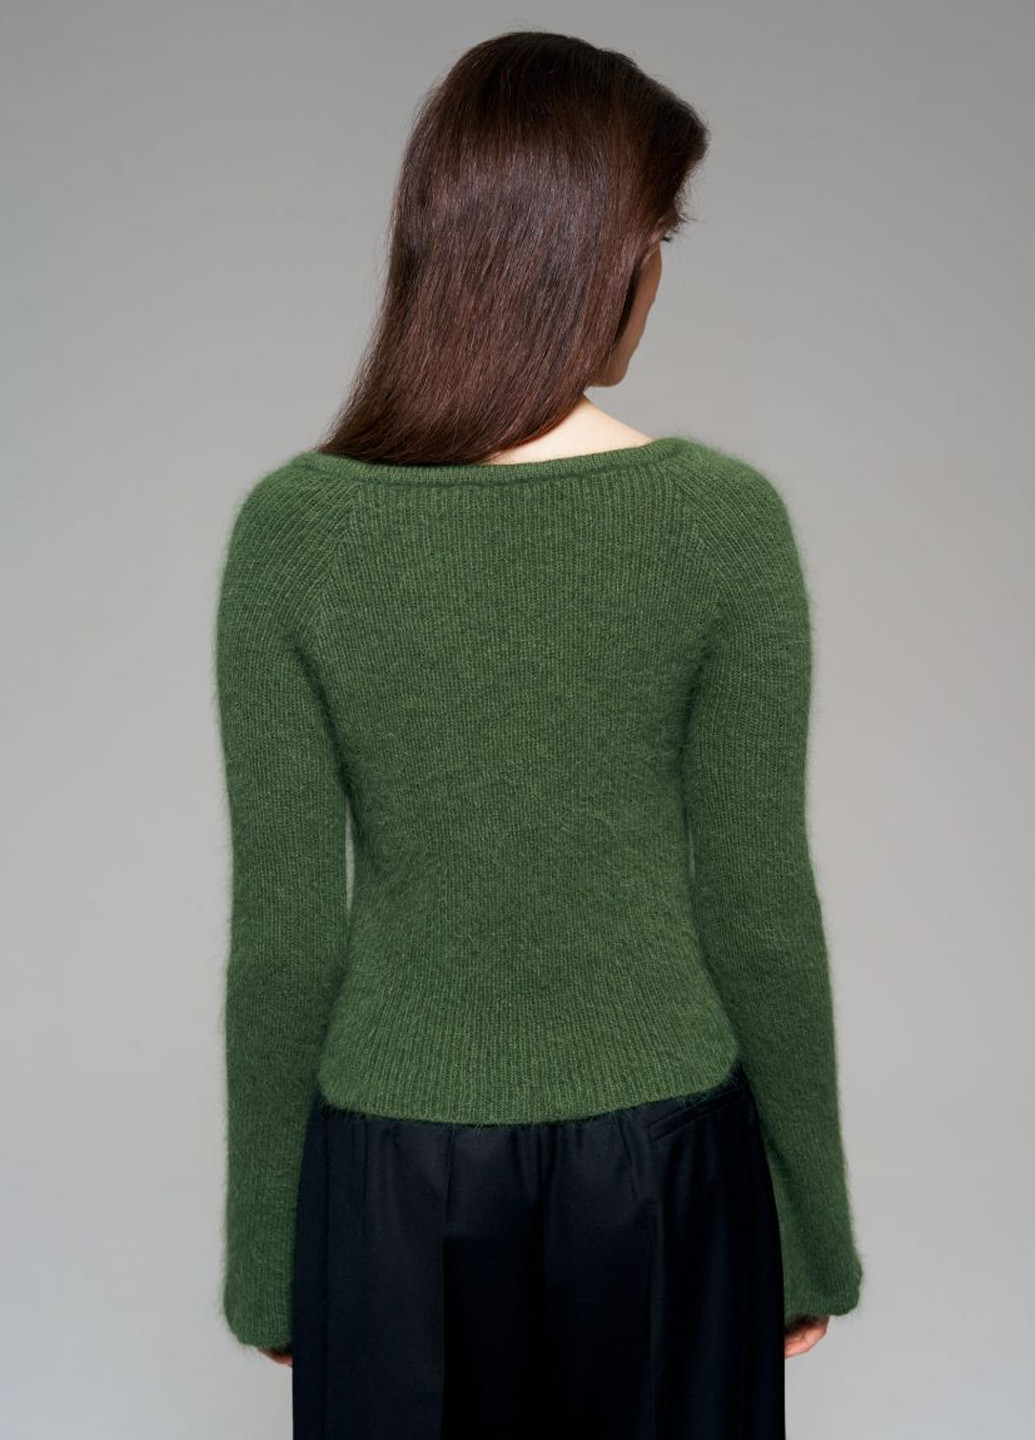 Зеленый демисезонный пуловер пуловер JUL